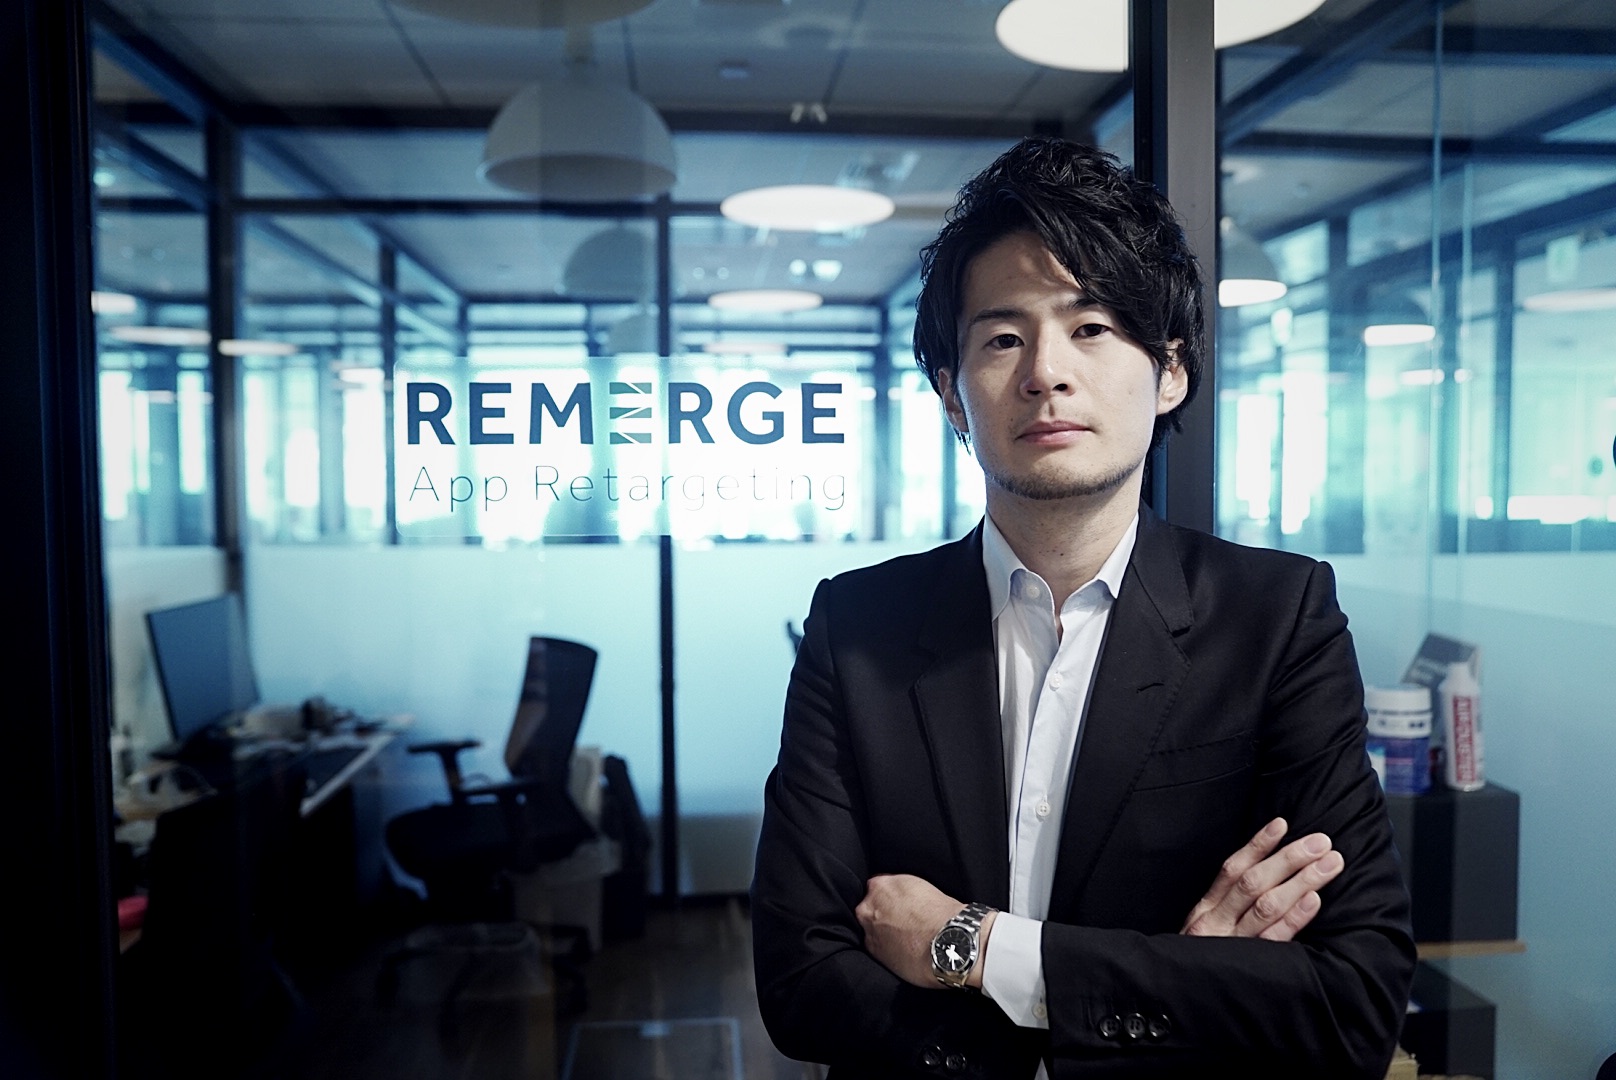 Remerge株式会社 Sales Director 山根竜二(やまね りゅうじ)氏 